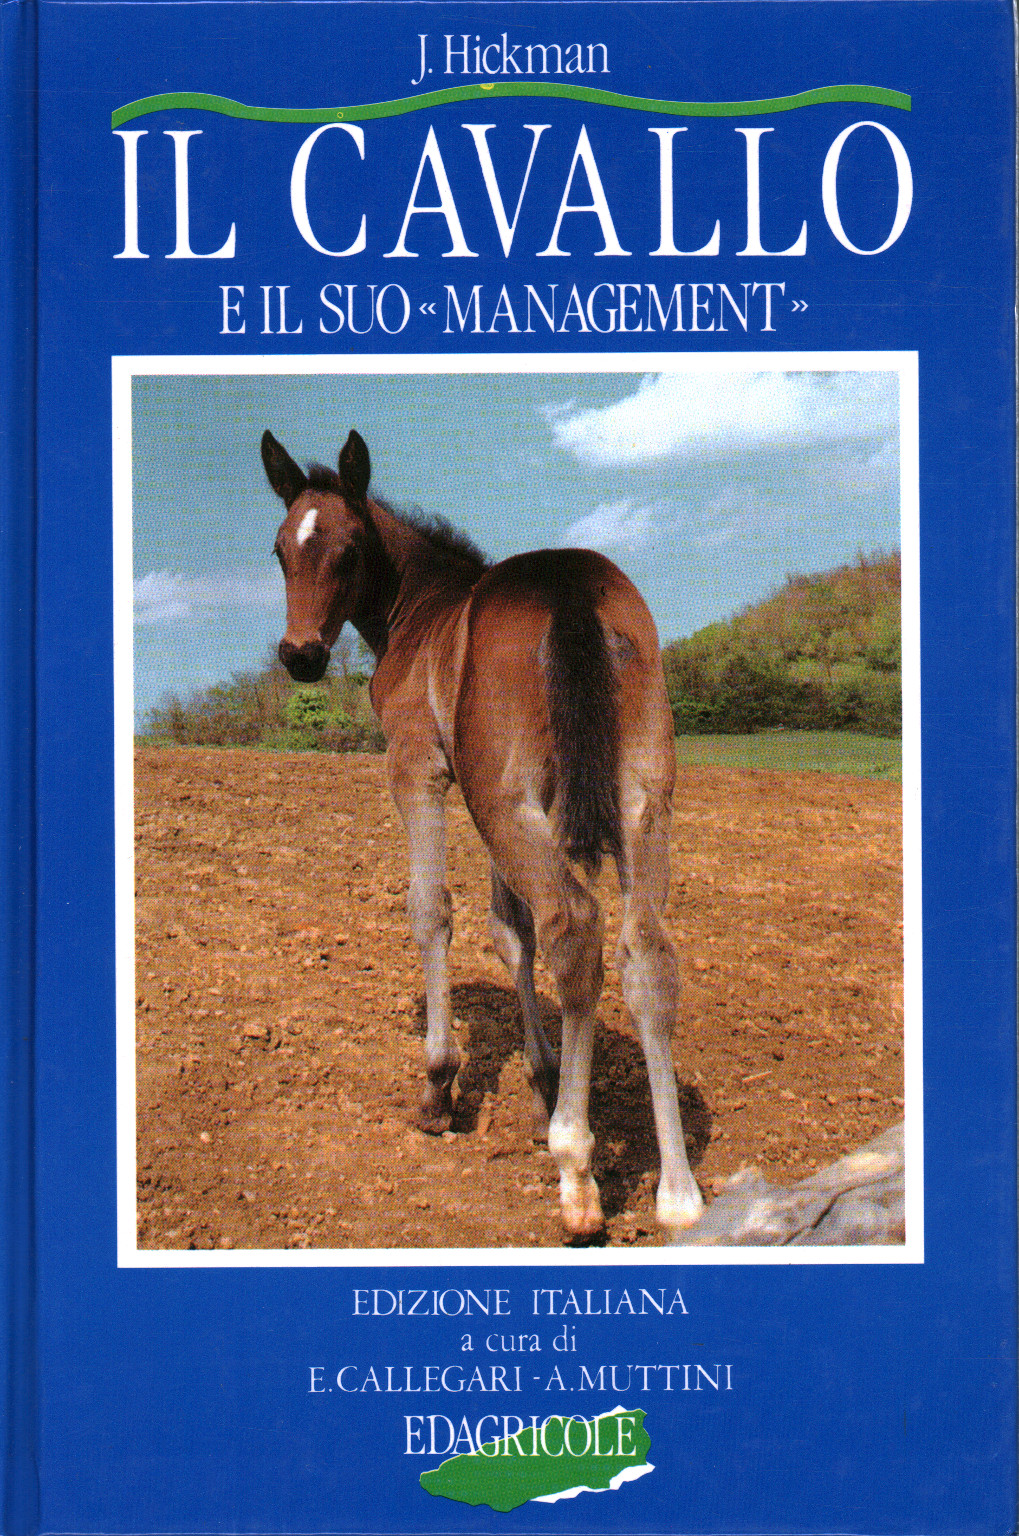 Il cavallo e il suo «management», s.a.